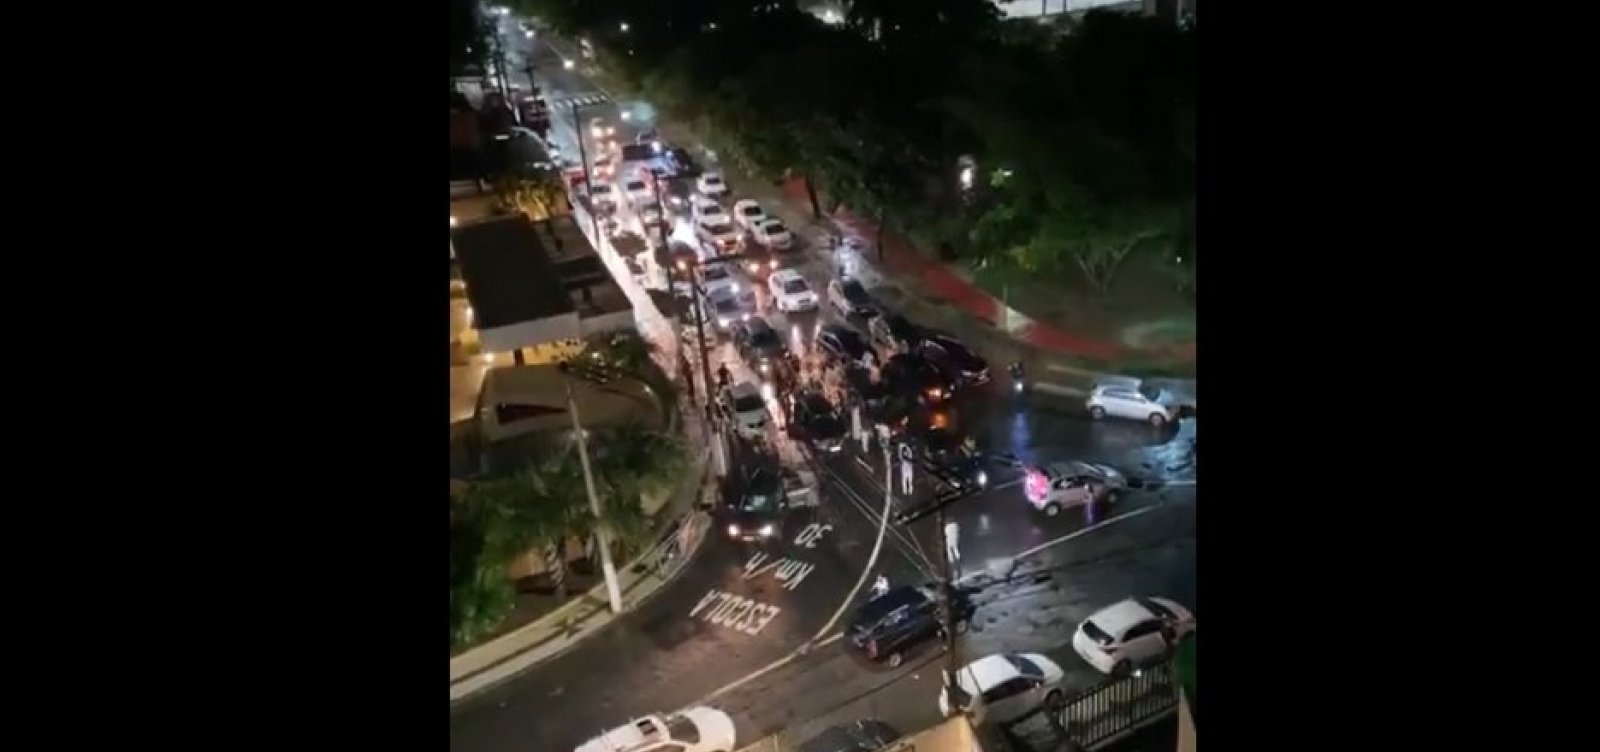 Grupo bloqueia rua na Pituba e cria aglomeração para comemorar aniversário de 15 anos; veja vídeo